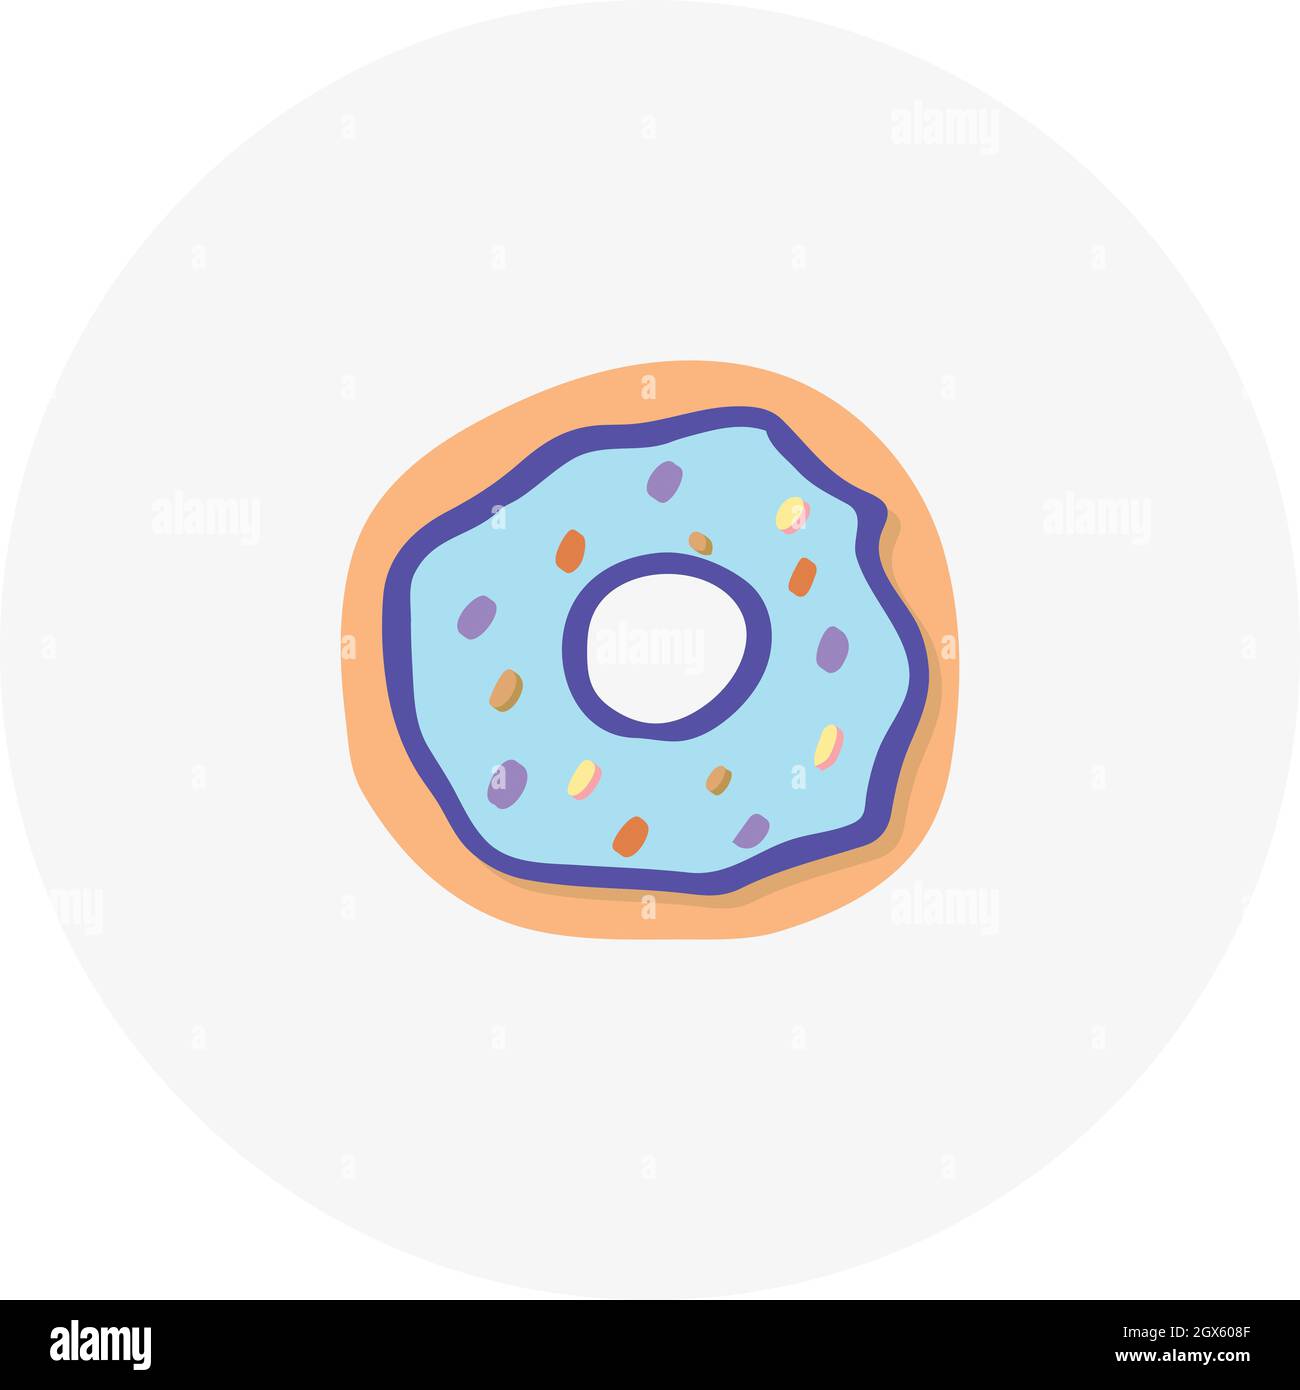 Handgezogener Donut. Vektordarstellung im Doodle-Stil. Gestaltungselement für Postkarten, Einladungen oder andere Grafik- und Webdesign. Stock Vektor